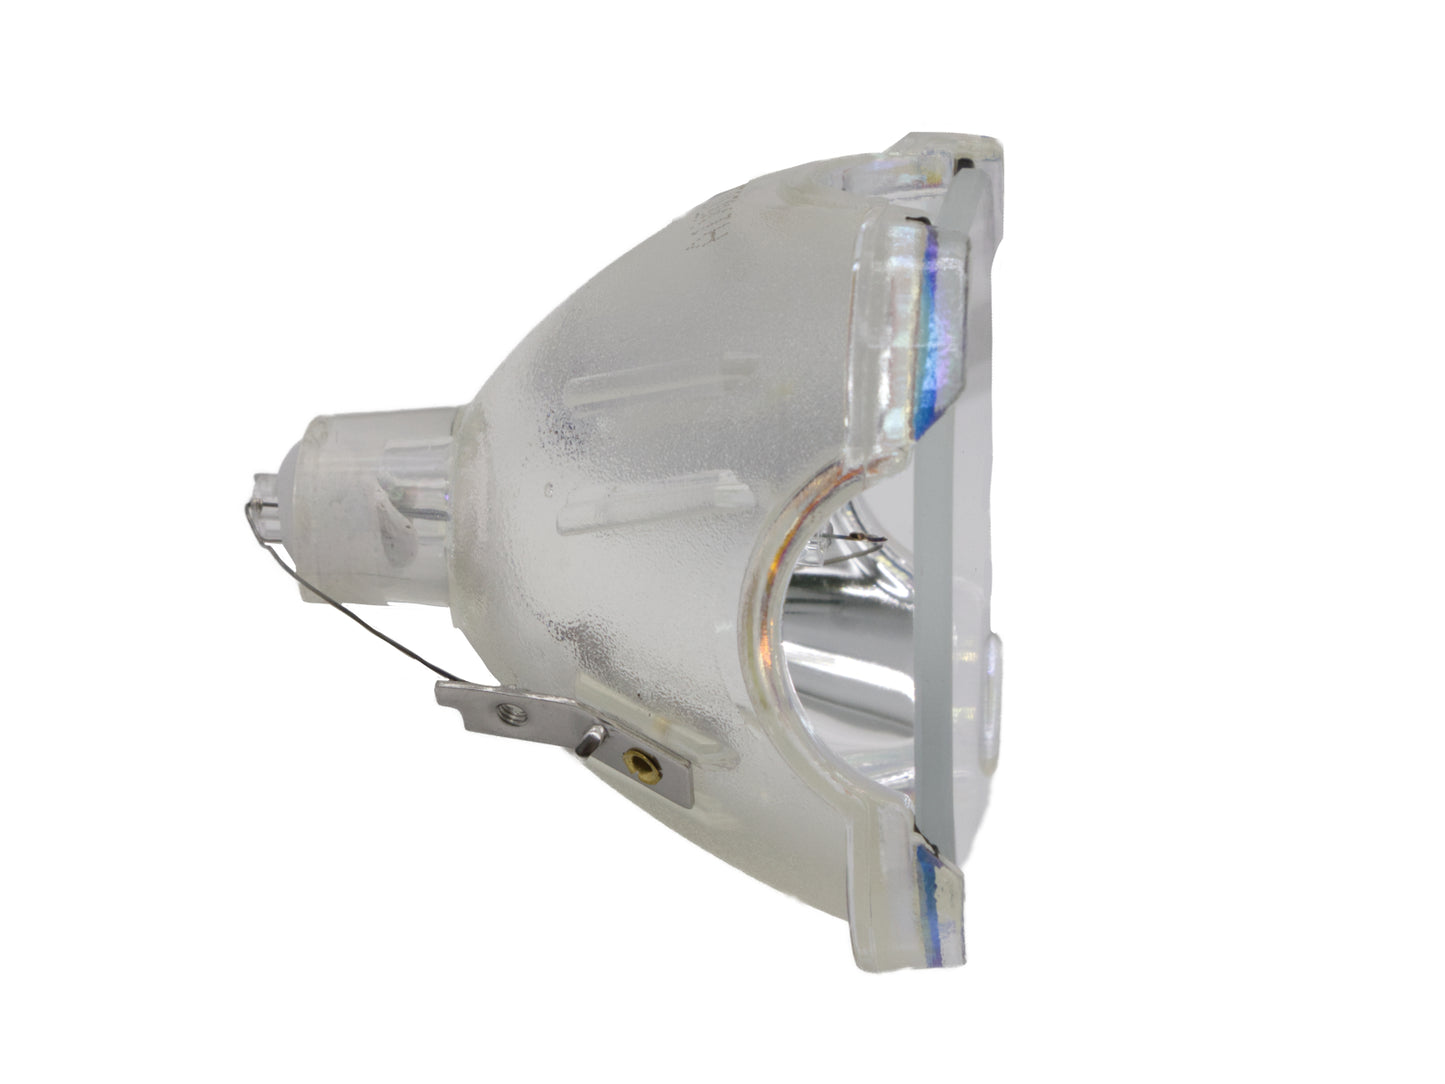 azurano Beamerlampe für SONY LMP-H210 Ersatzlampe Projektorlampe - Bild 5